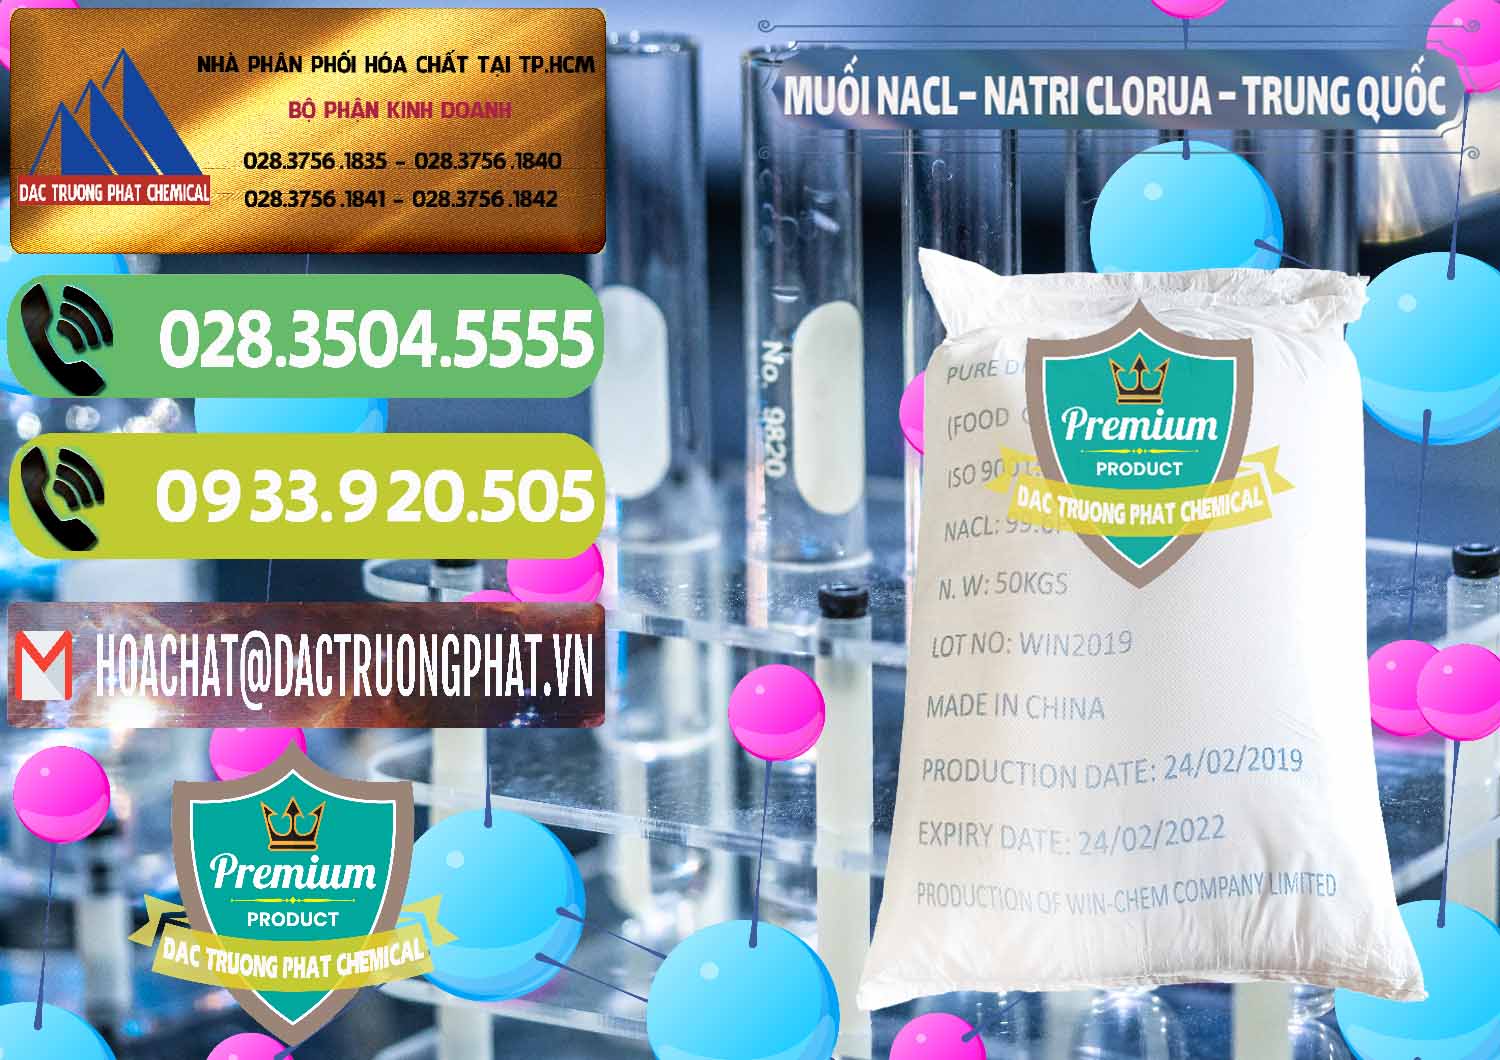 Nơi chuyên bán _ cung cấp Muối NaCL – Sodium Chloride Trung Quốc China - 0097 - Nơi cung cấp - phân phối hóa chất tại TP.HCM - hoachatmientay.vn